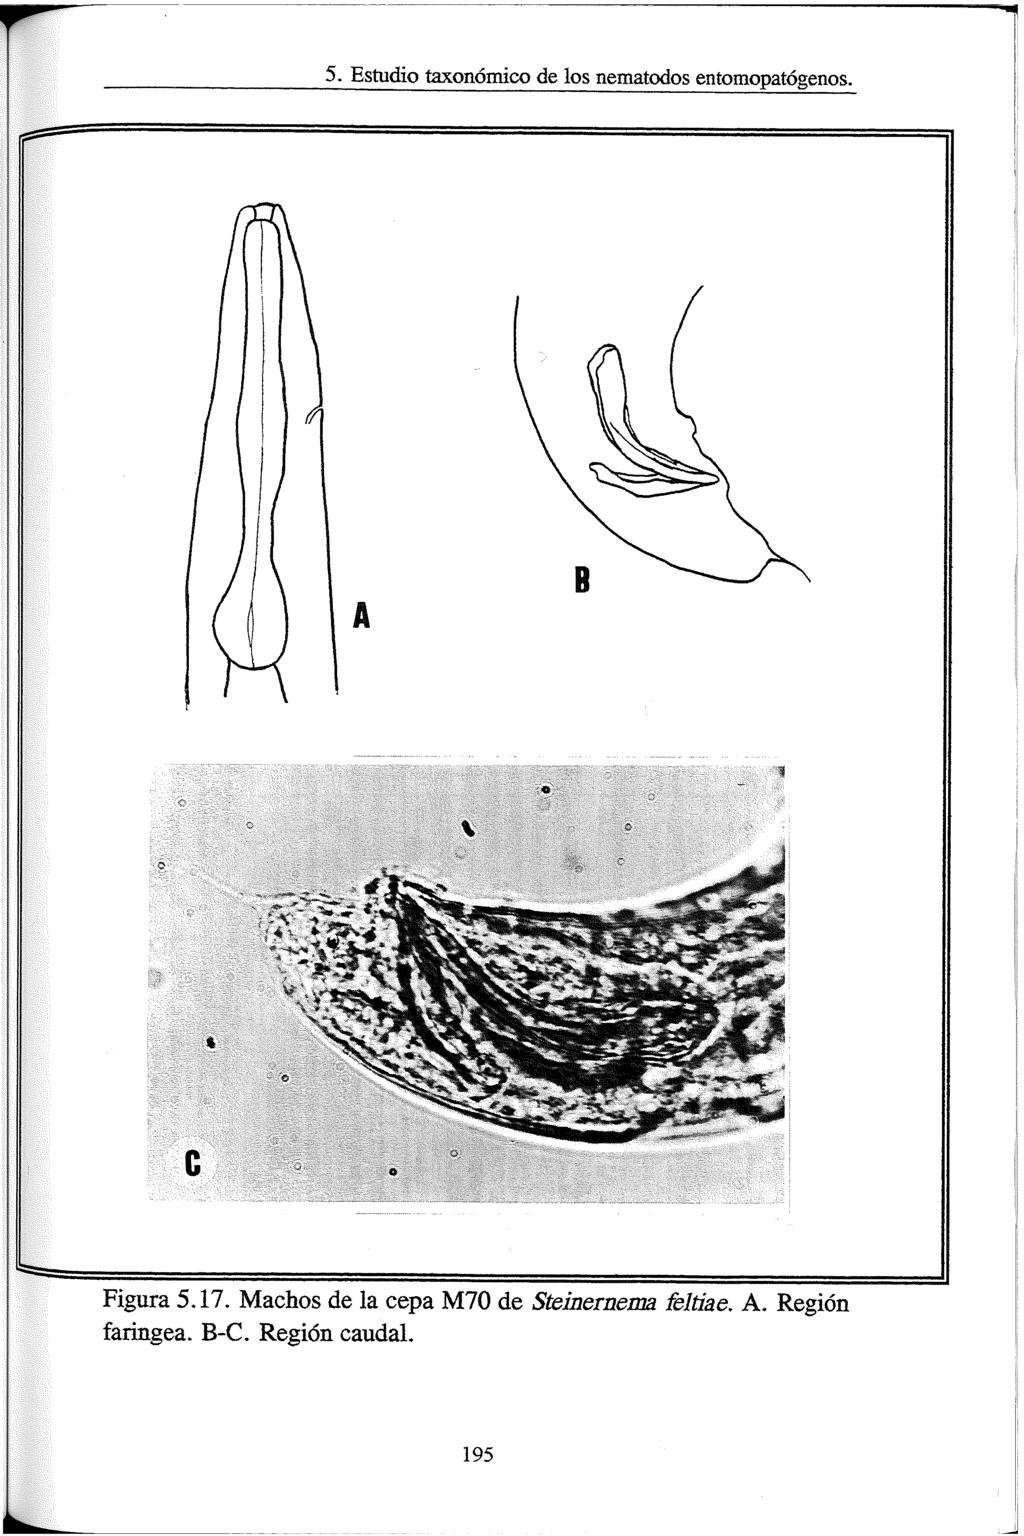 5. Estudio taxonómicx) de los nematodos entomopatógenos. Figura 5.17.